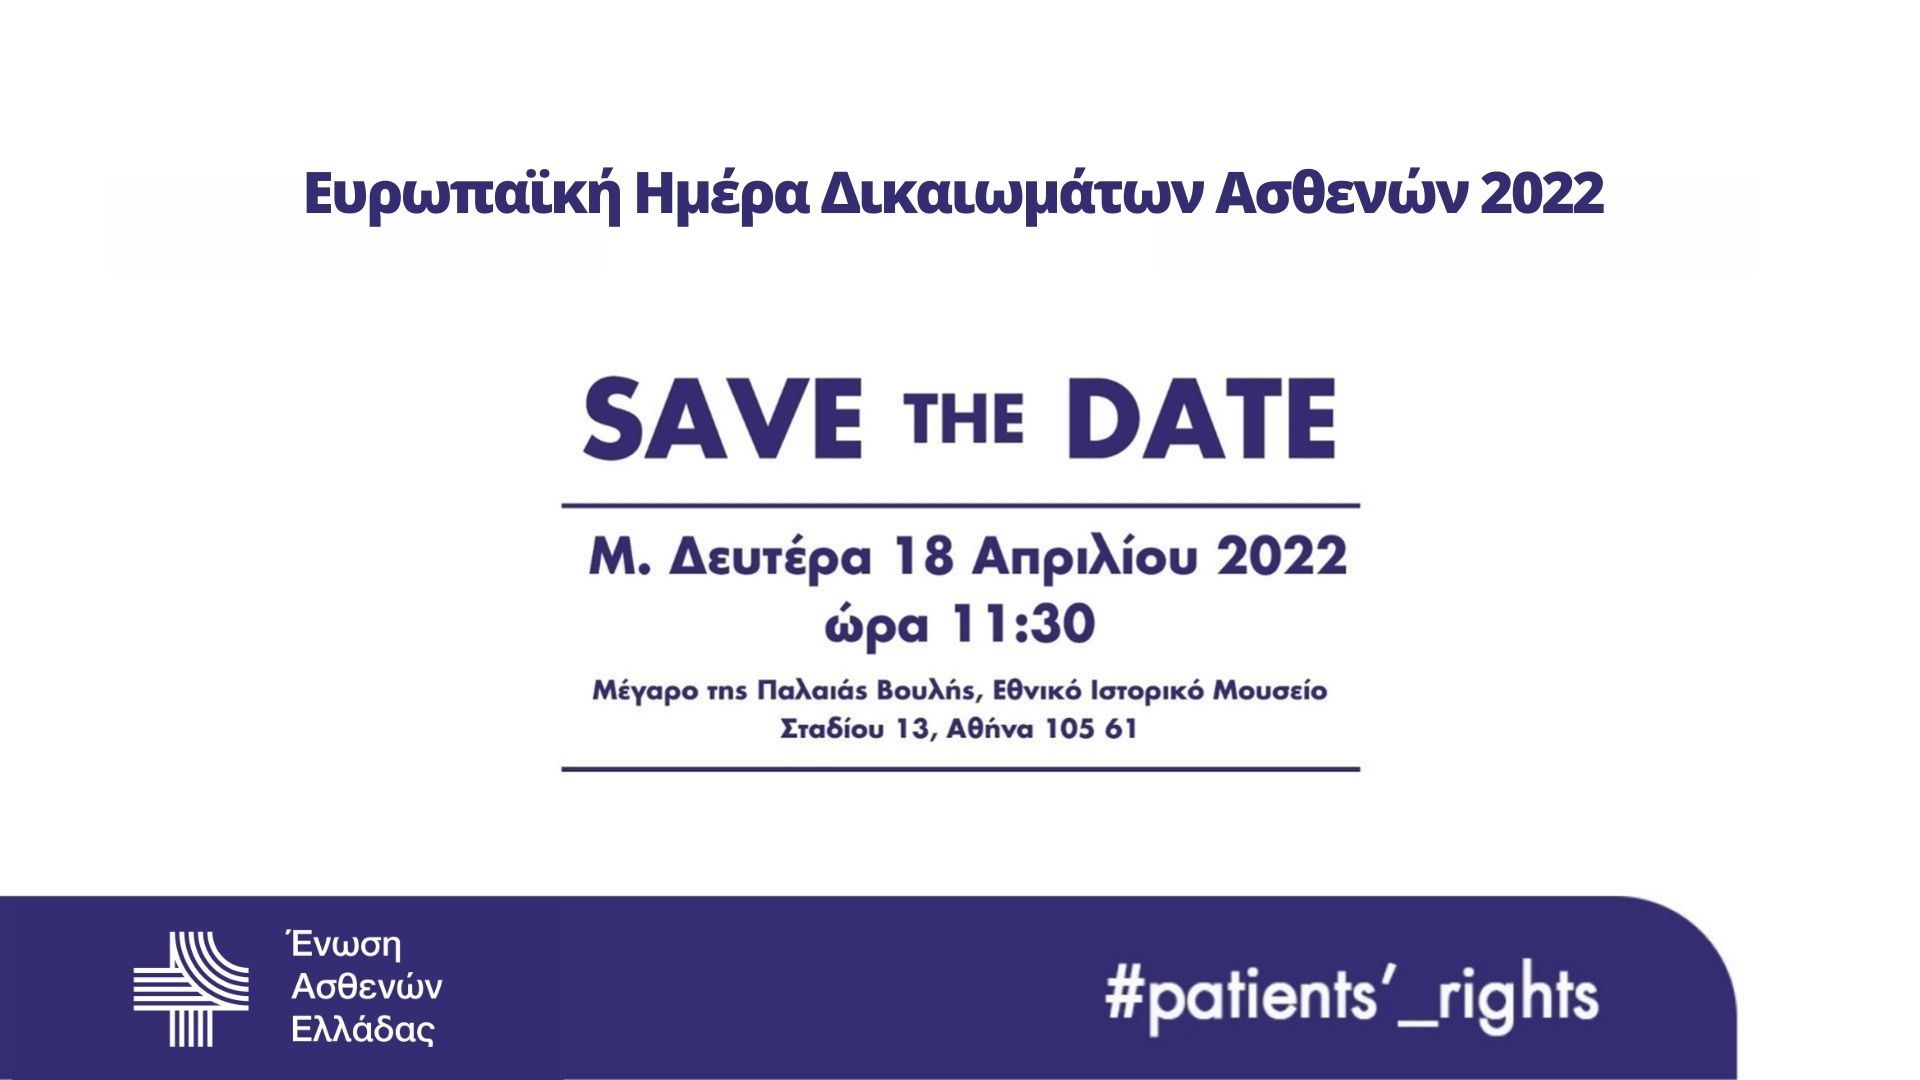 Ευρωπαϊκή Ημέρα Δικαιωμάτων των Ασθενών: Εκδήλωση της Ένωσης Ασθενών Ελλάδας στις 18/4